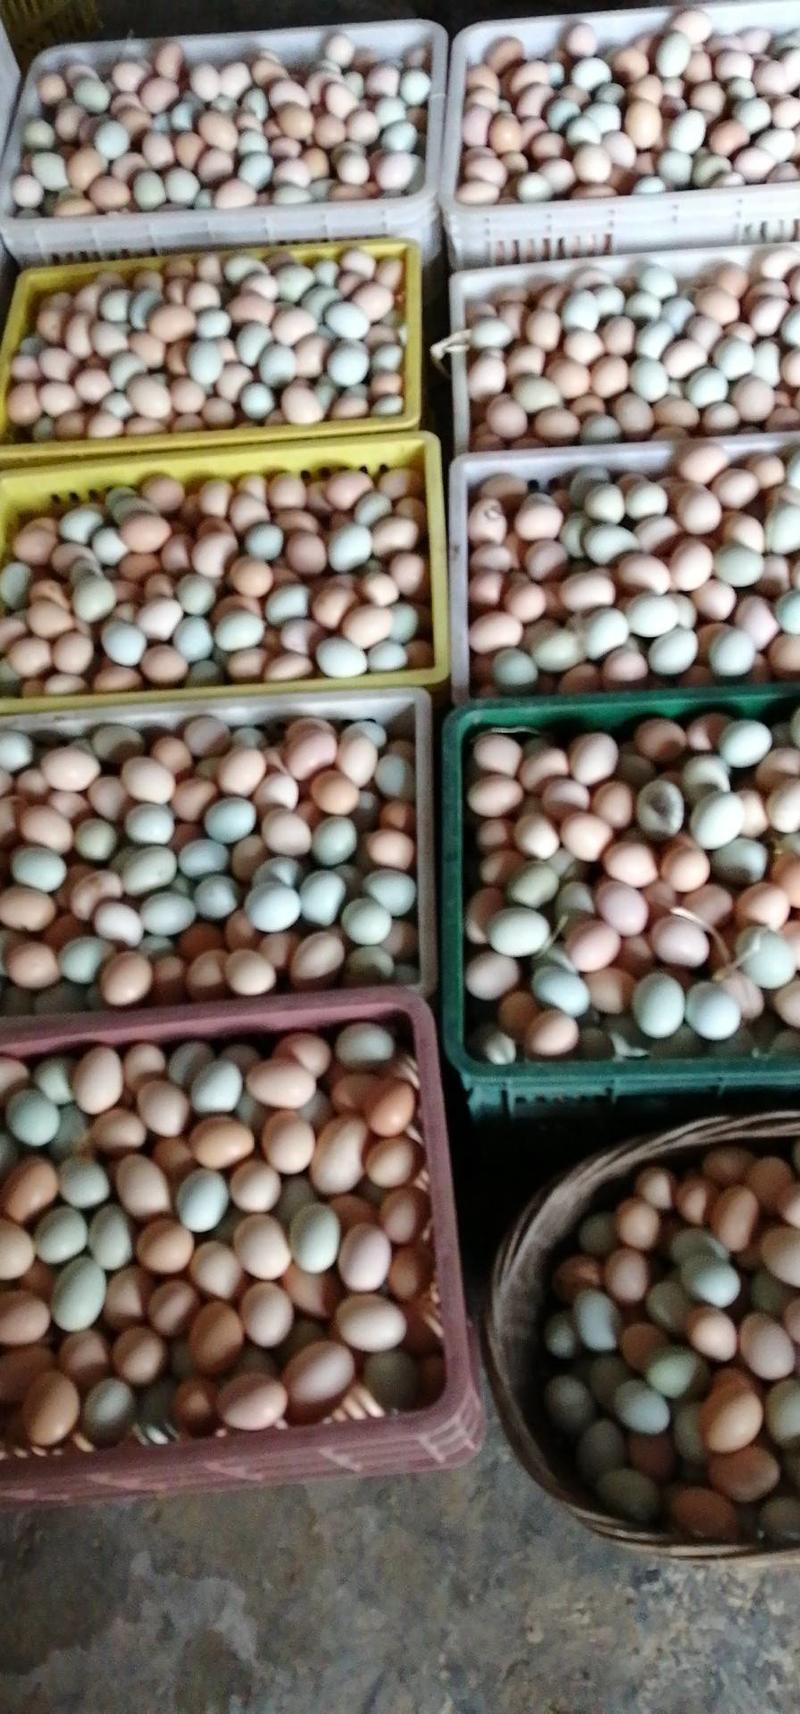 【精品】乡下农家山林散养土鸡蛋品质保证全国发货